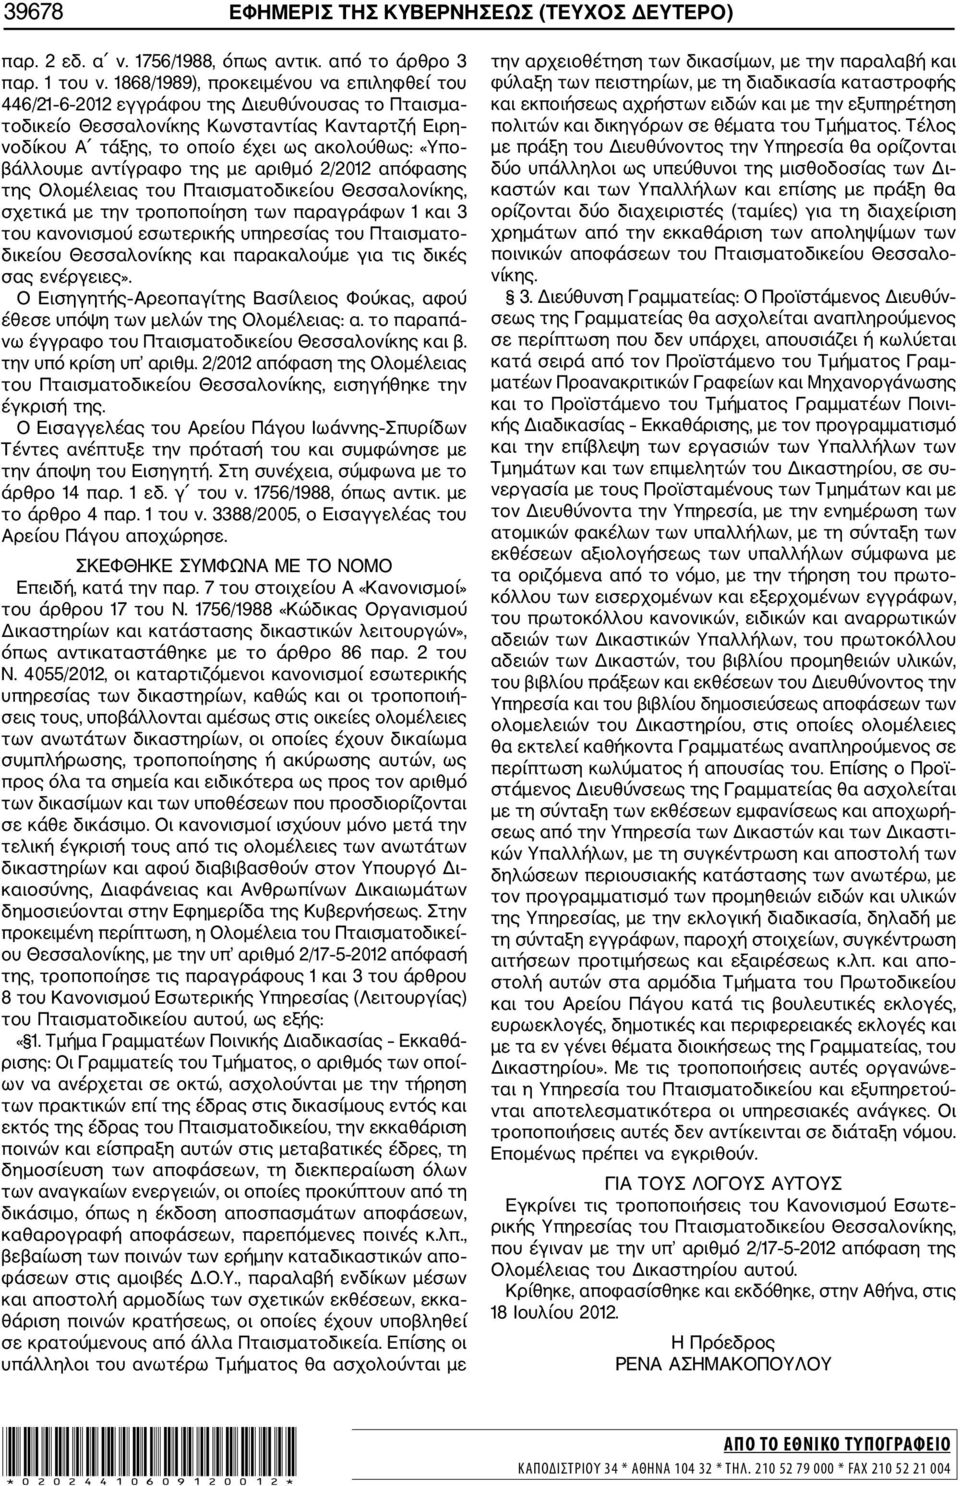 αντίγραφο της με αριθμό 2/2012 απόφασης της Ολομέλειας του Πταισματοδικείου Θεσσαλονίκης, σχετικά με την τροποποίηση των παραγράφων 1 και 3 του κανονισμού εσωτερικής υπηρεσίας του Πταισματο δικείου